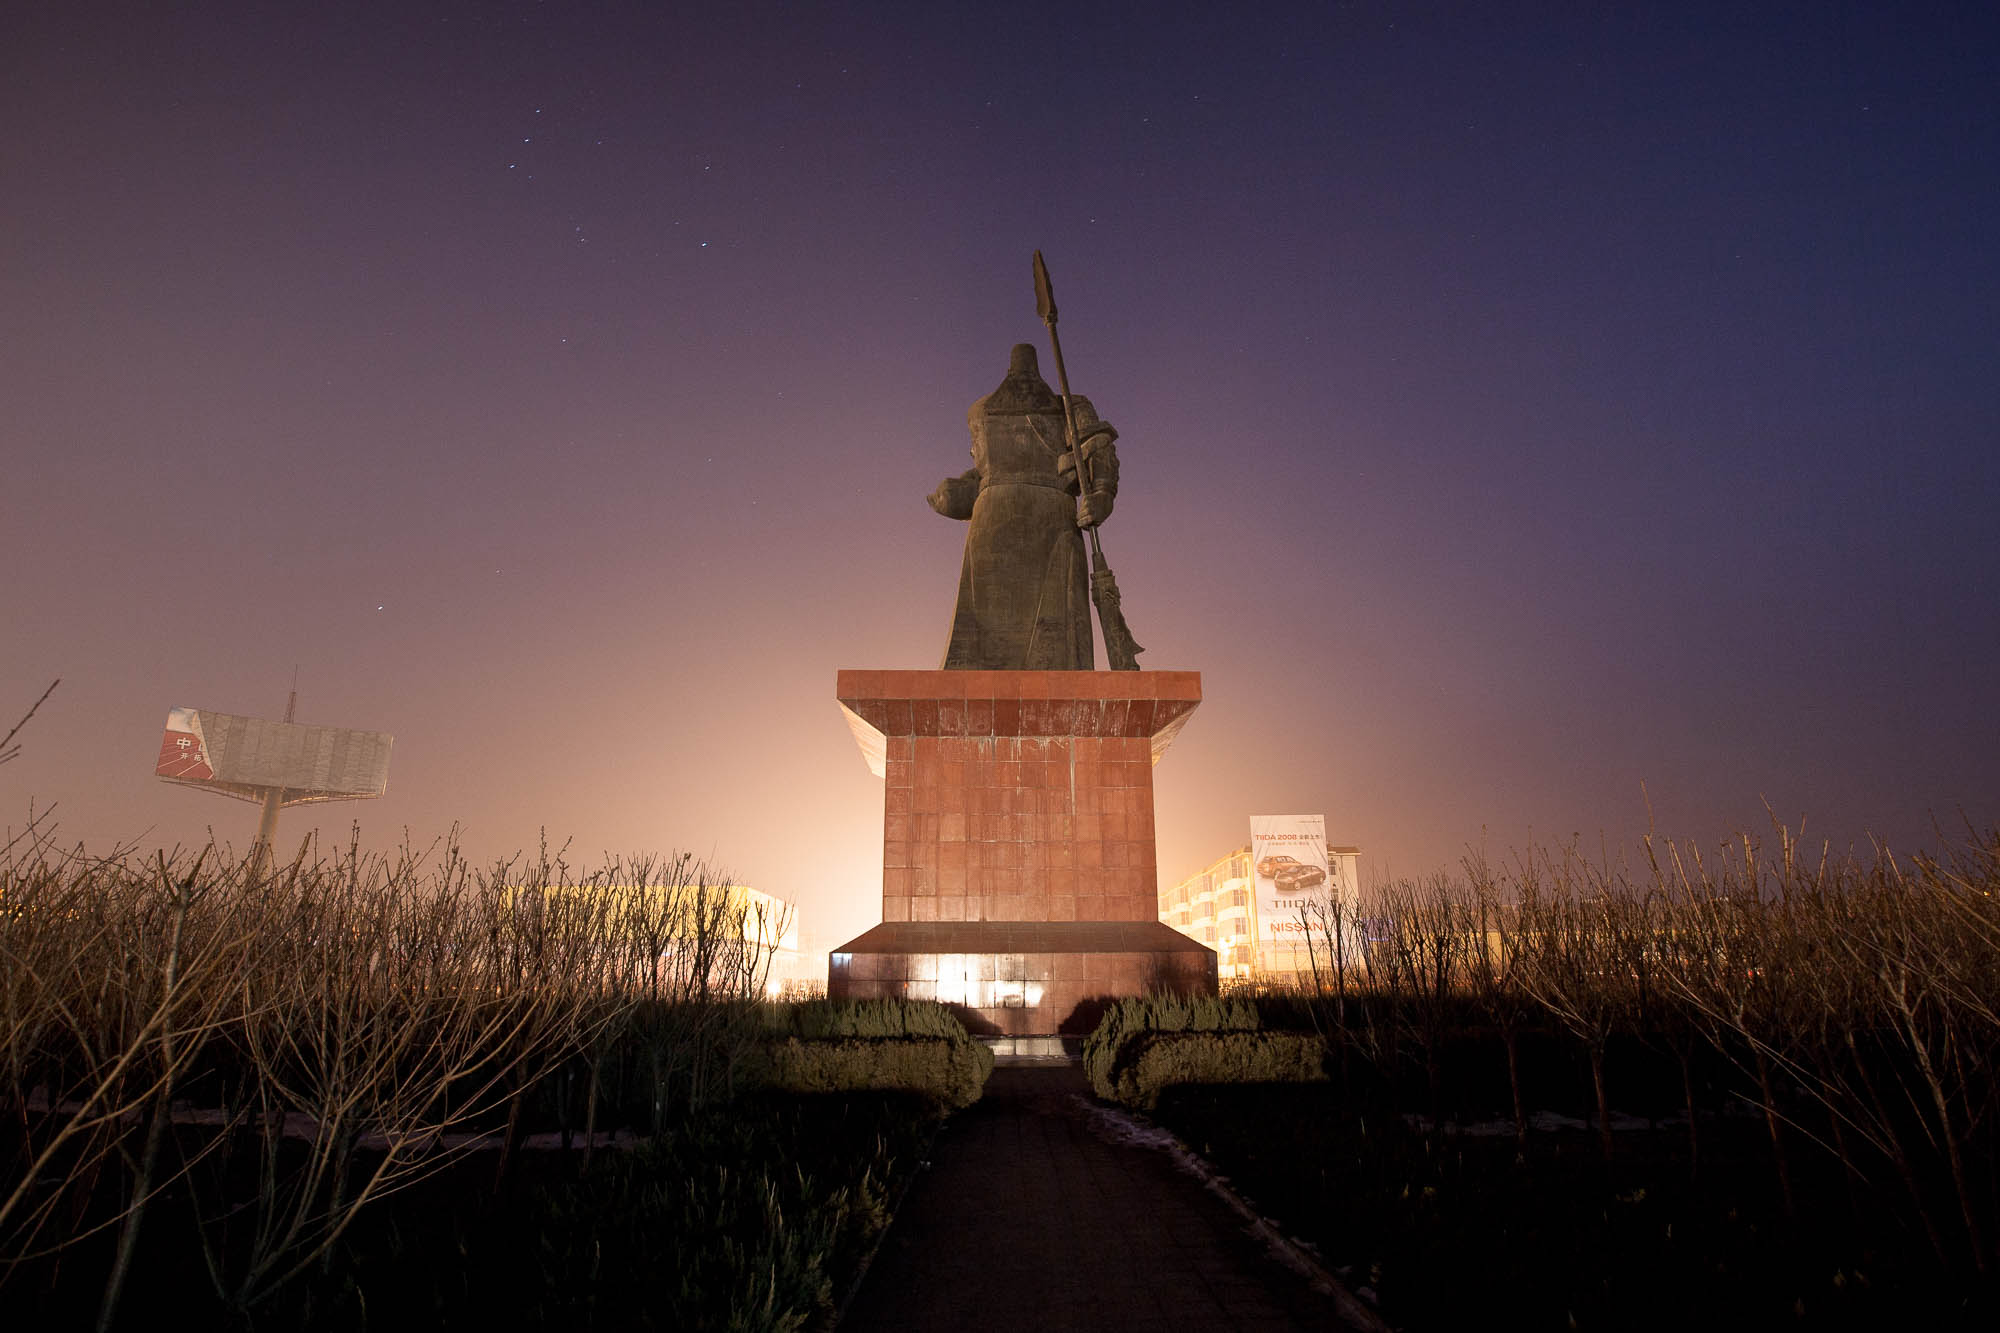 Guan Yu statue